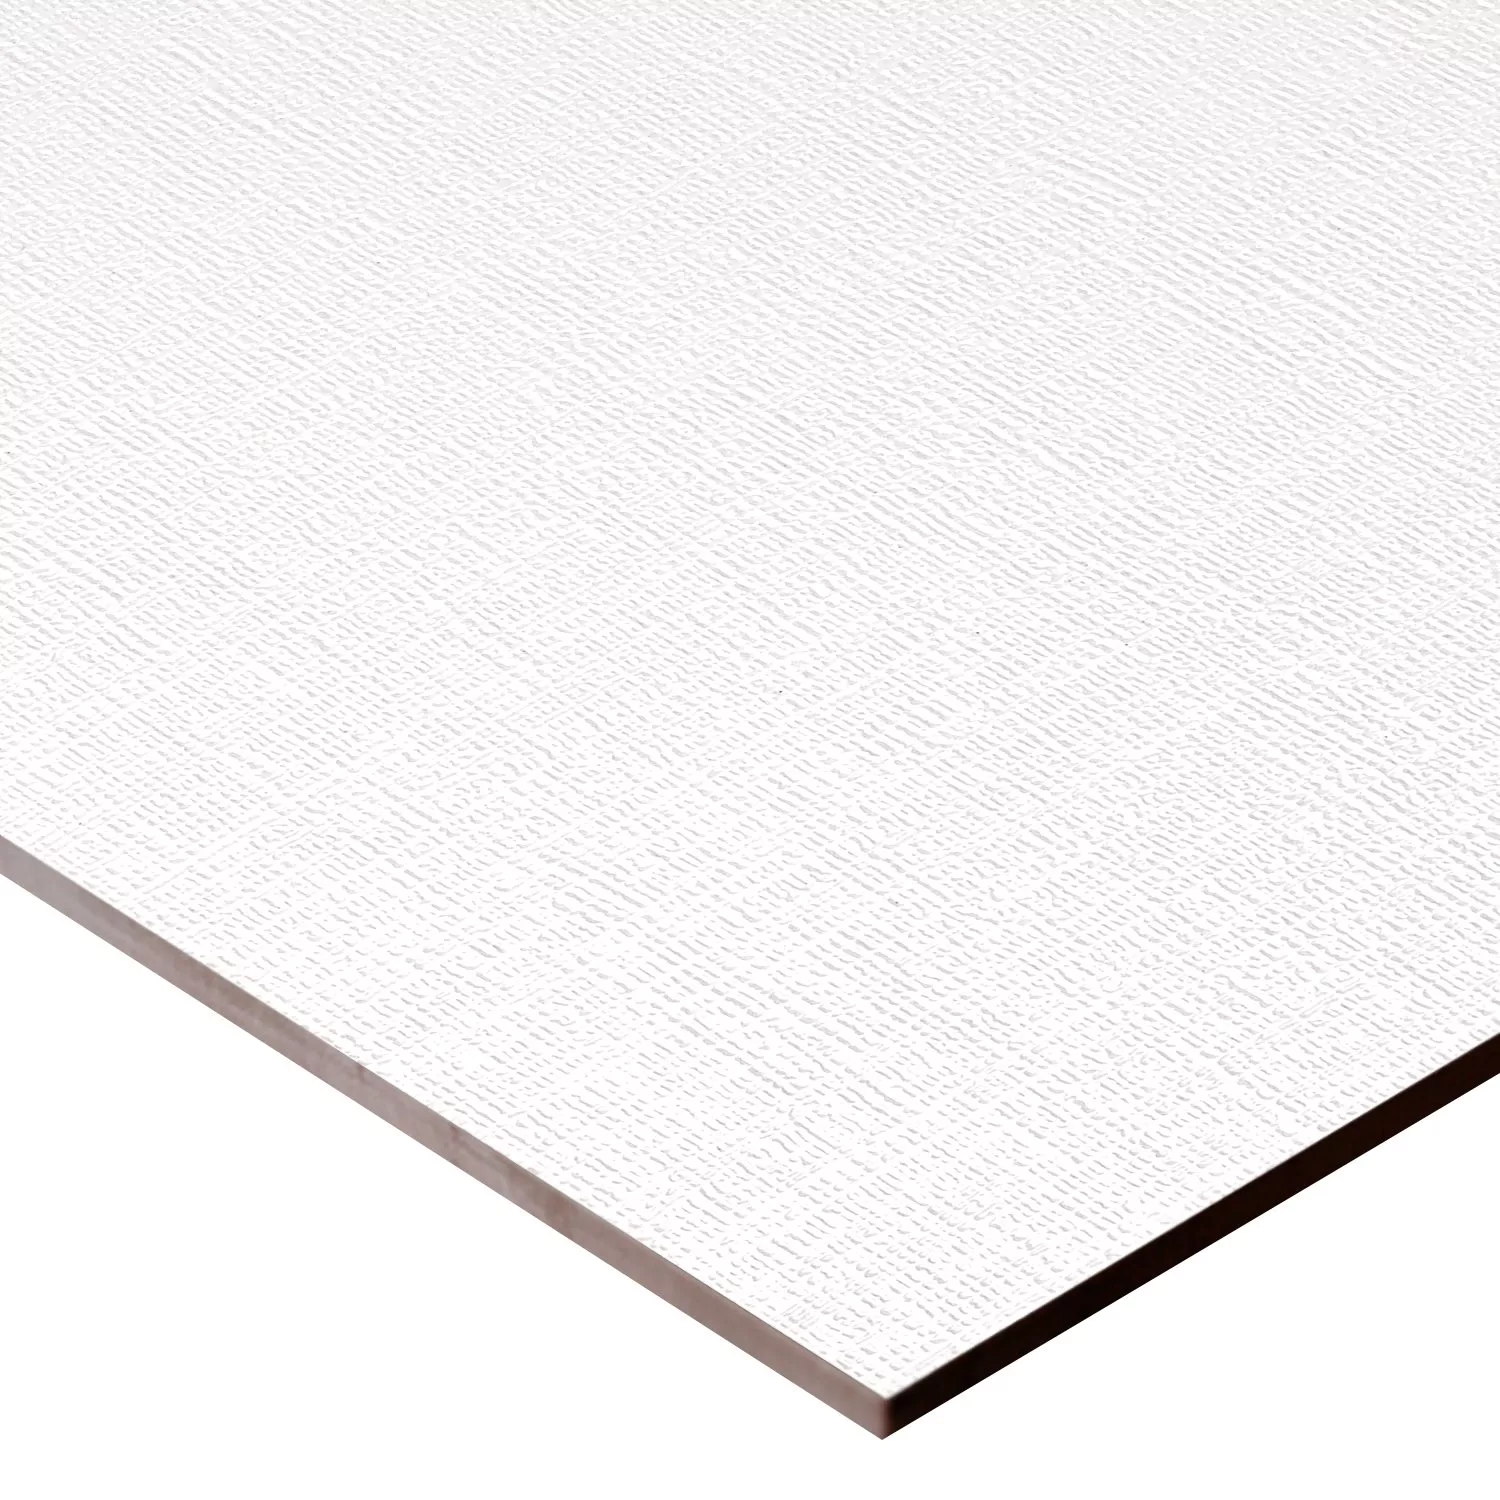 Πλακάκια Tοίχου Vulcano Texture Ντεκόρ Ασπρο Παγωμένος 60x120cm